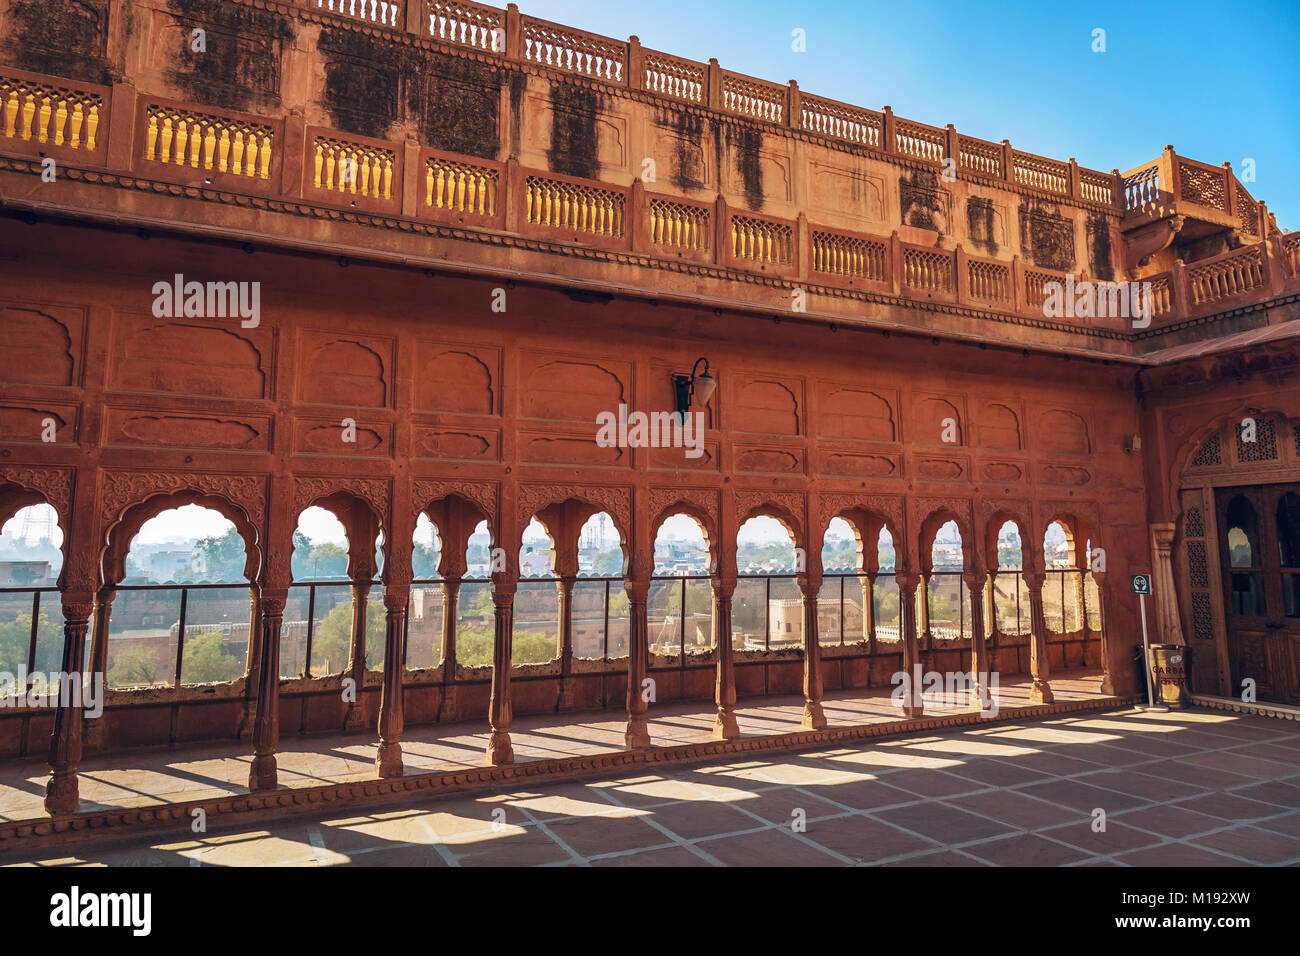 Junagarh Fort Bikaner Rajasthan red sandstone architecture. Stock Photo